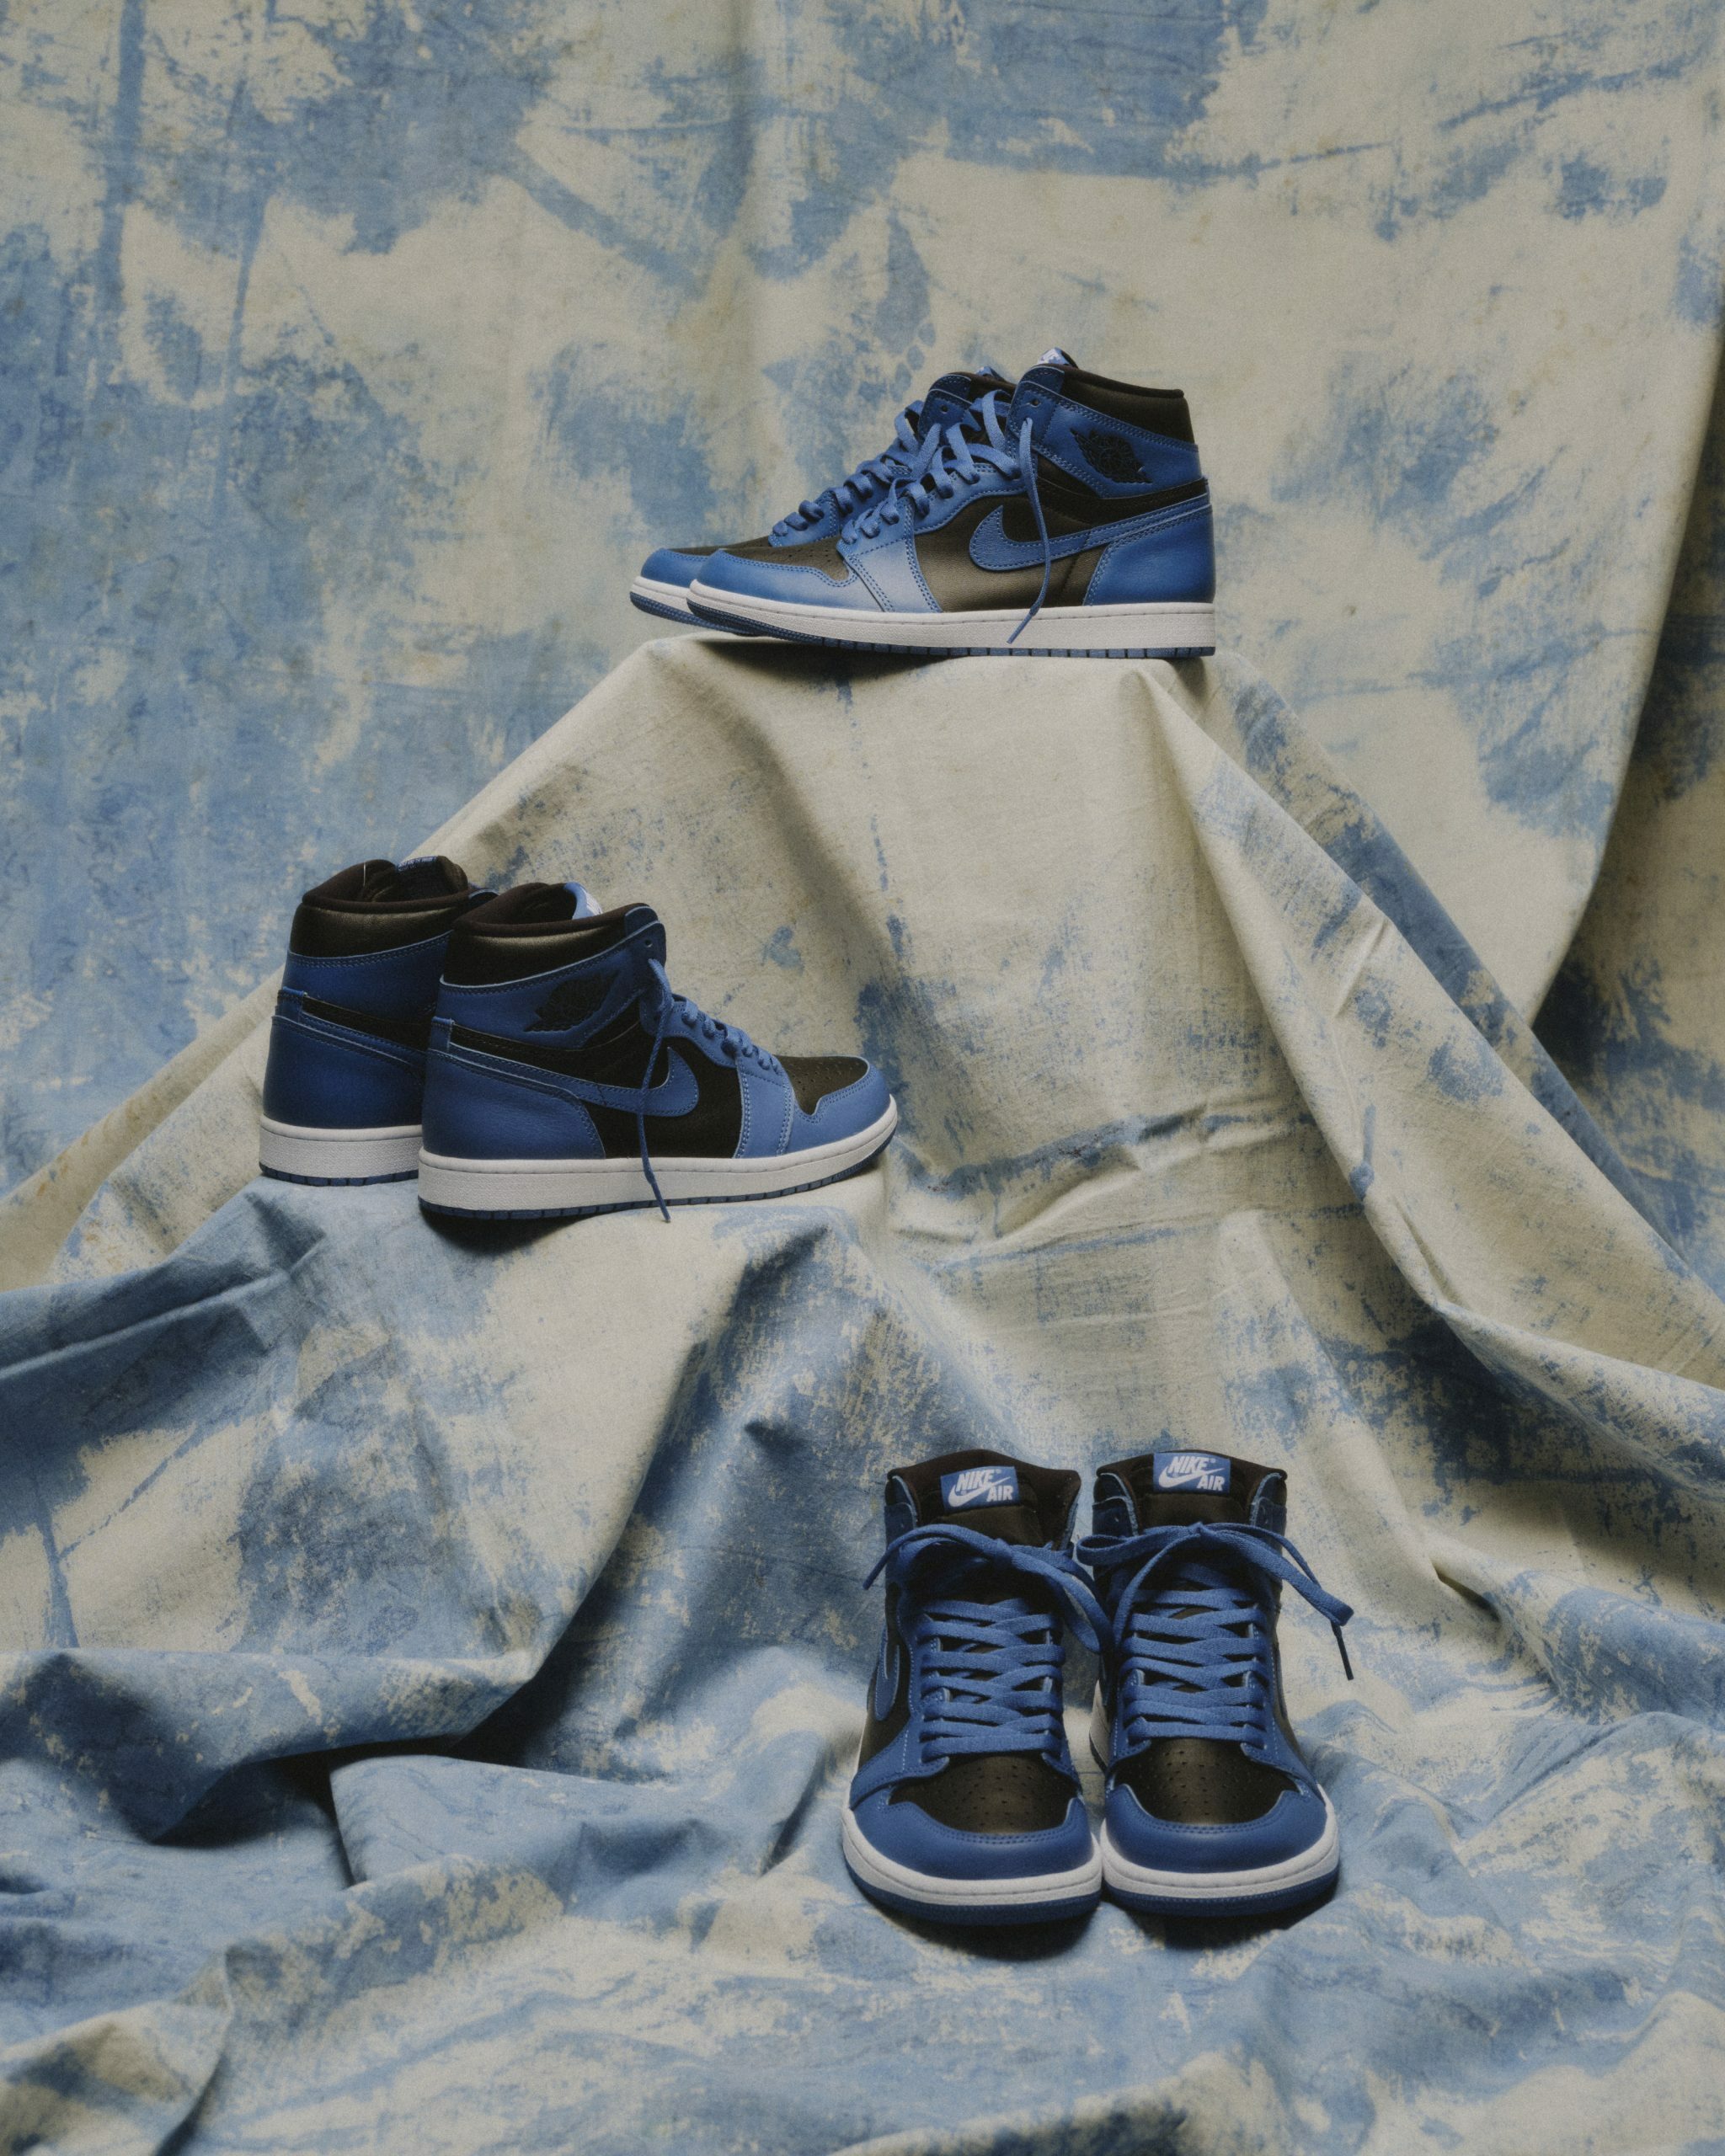 Air Jordan 1 High OG '' Dark Marina Blue '' 黑藍男鞋55508